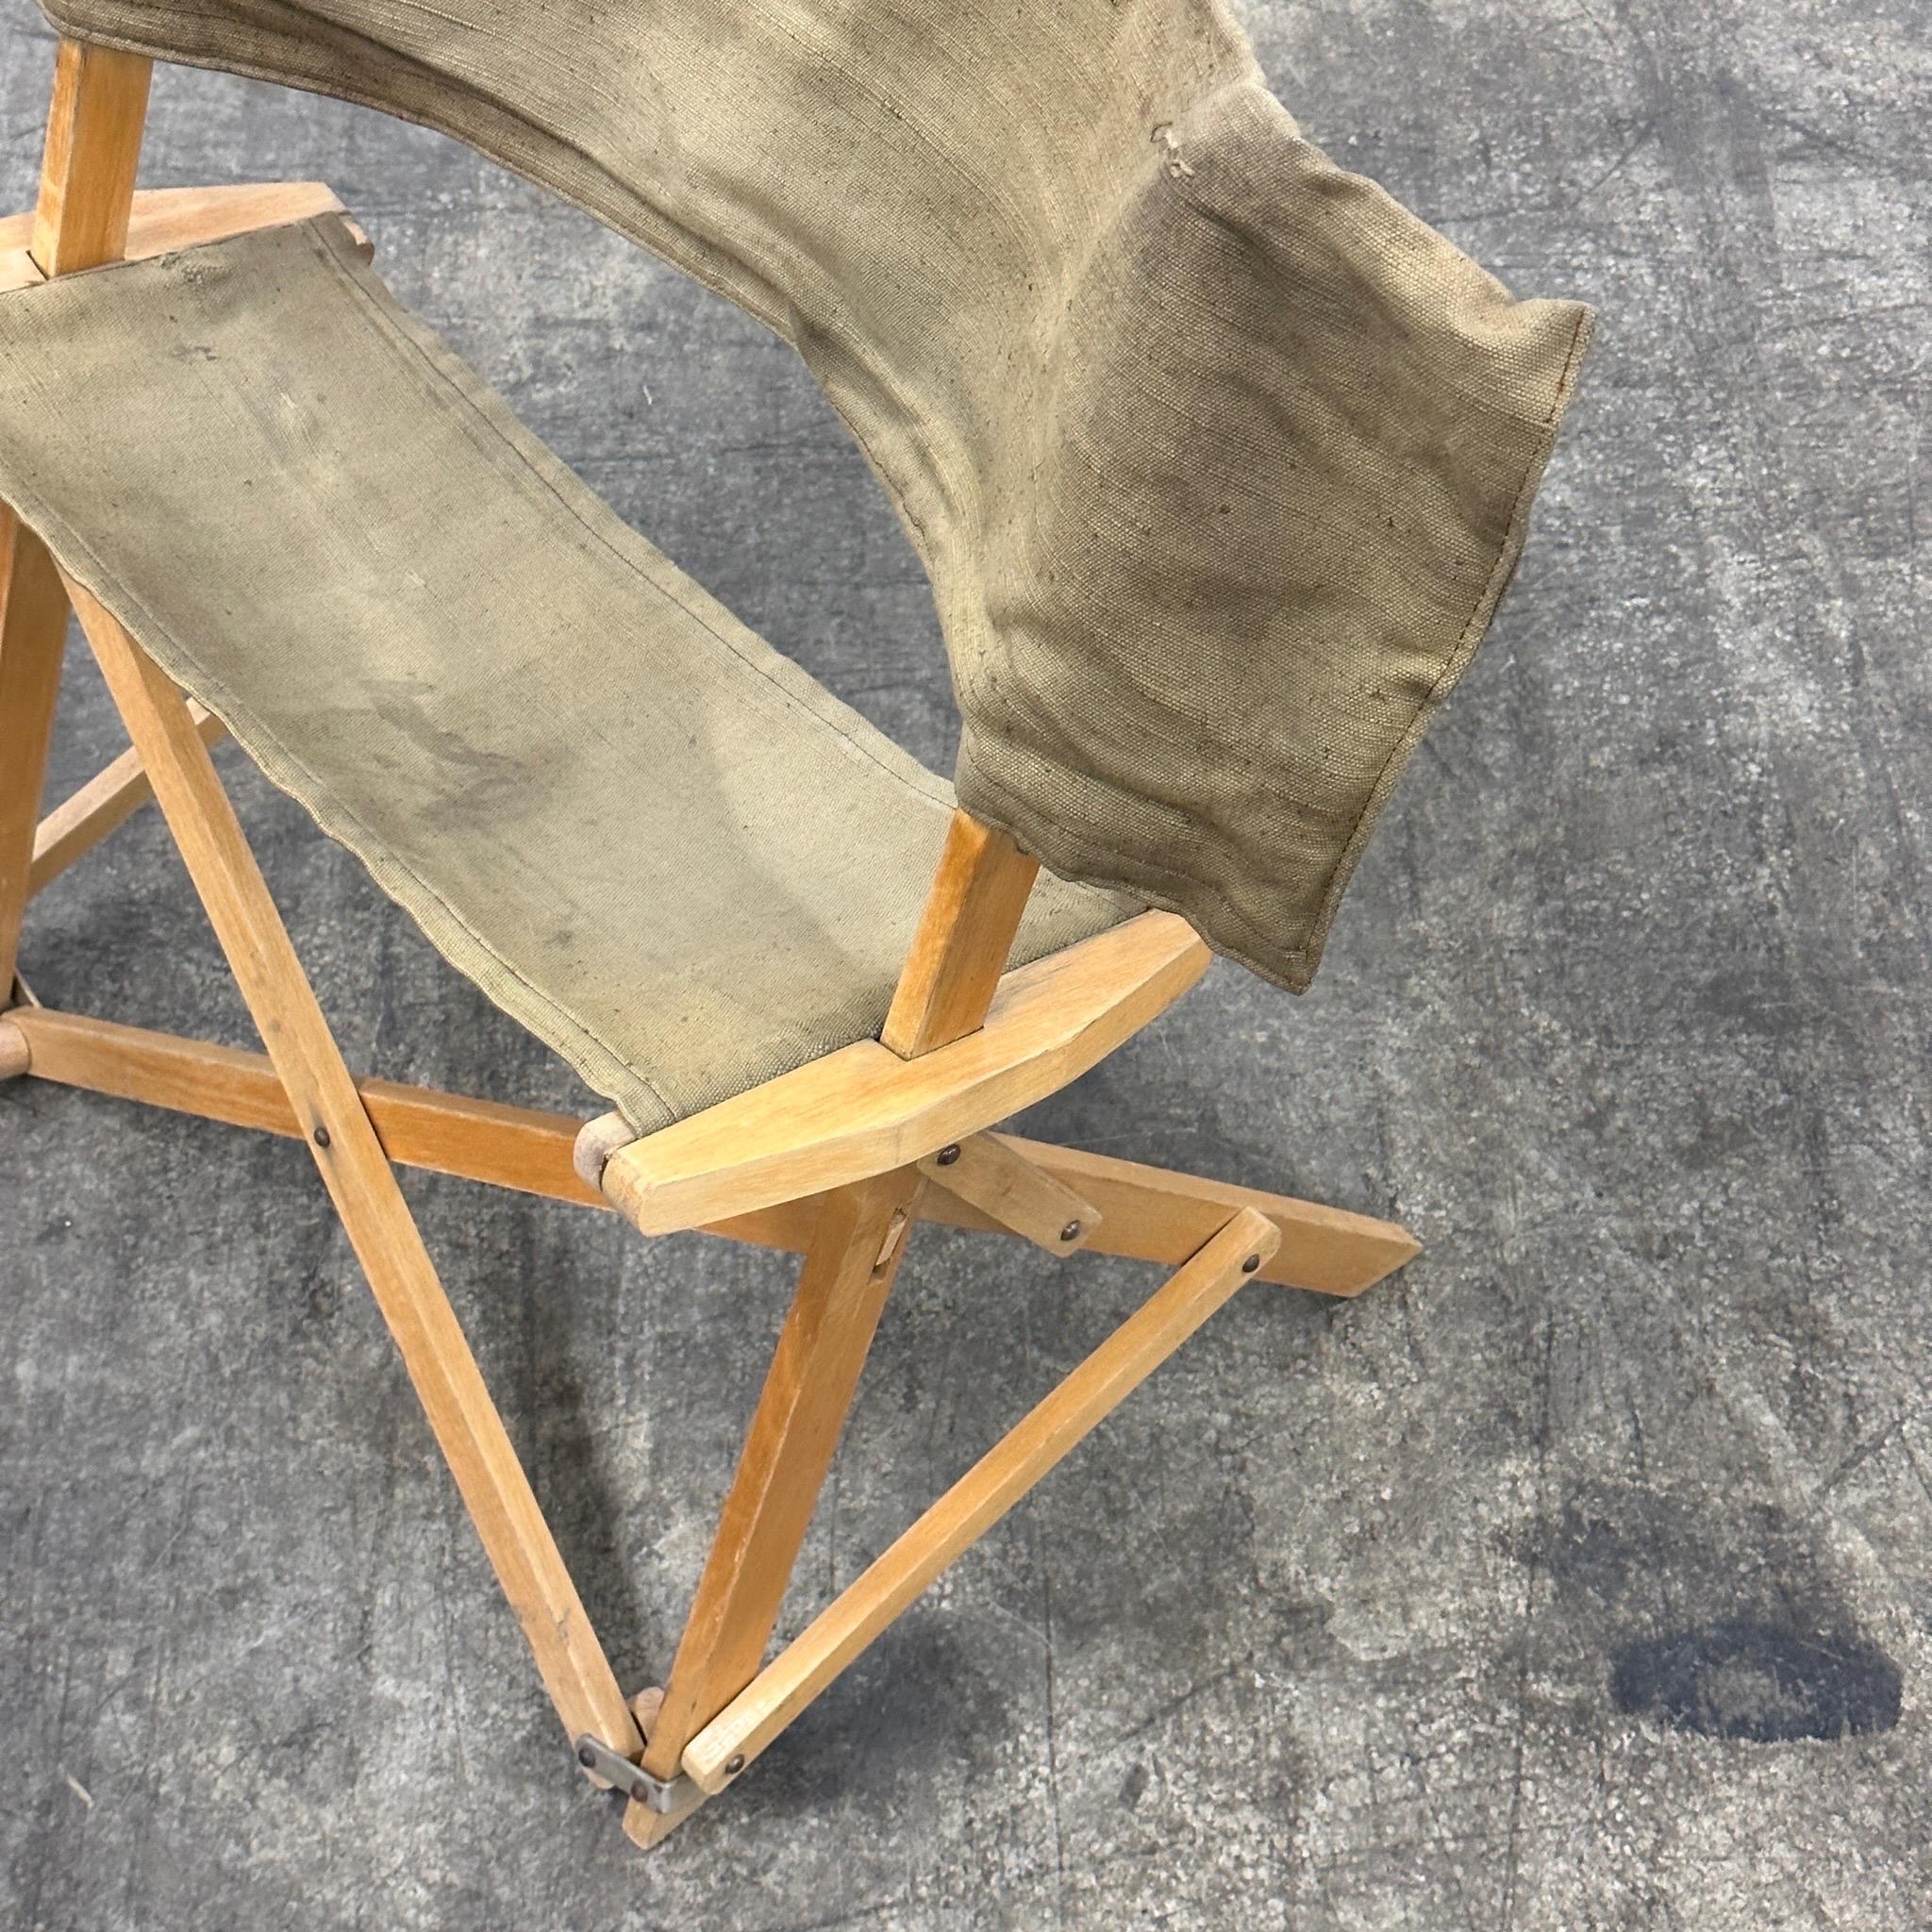 c. 1960s. Klappstuhl mit Holzrahmen und Tragetuch. Die Rückenlehne des Stuhls ist eine Tragetasche, in die der gesamte Stuhl passt. Scheinbar ein Werbeartikel für Petri-Kameras. 